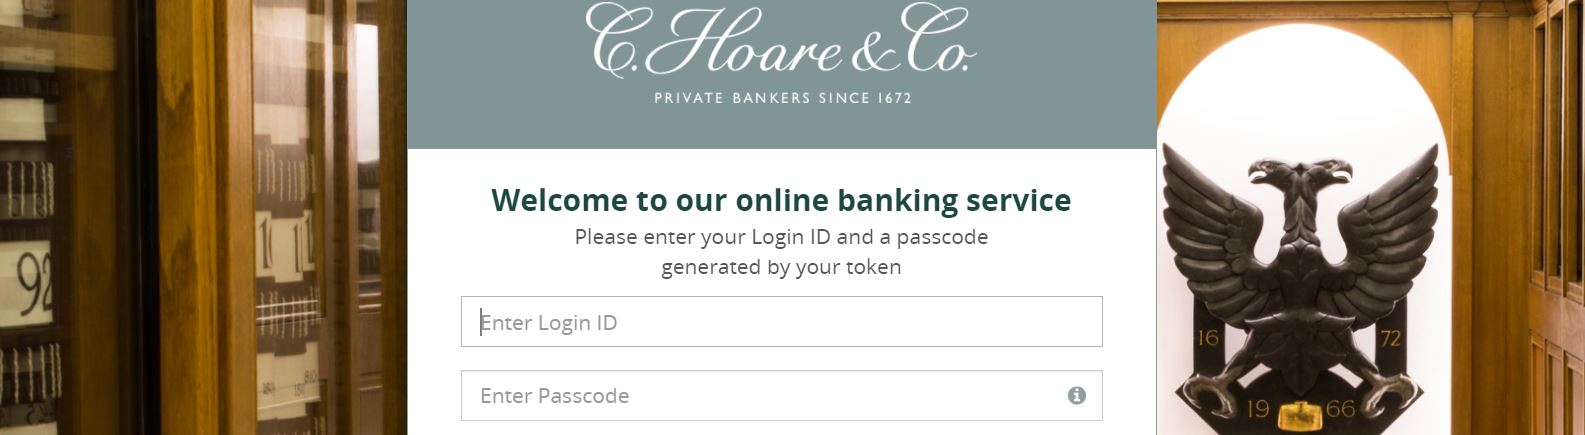 hoares online banking